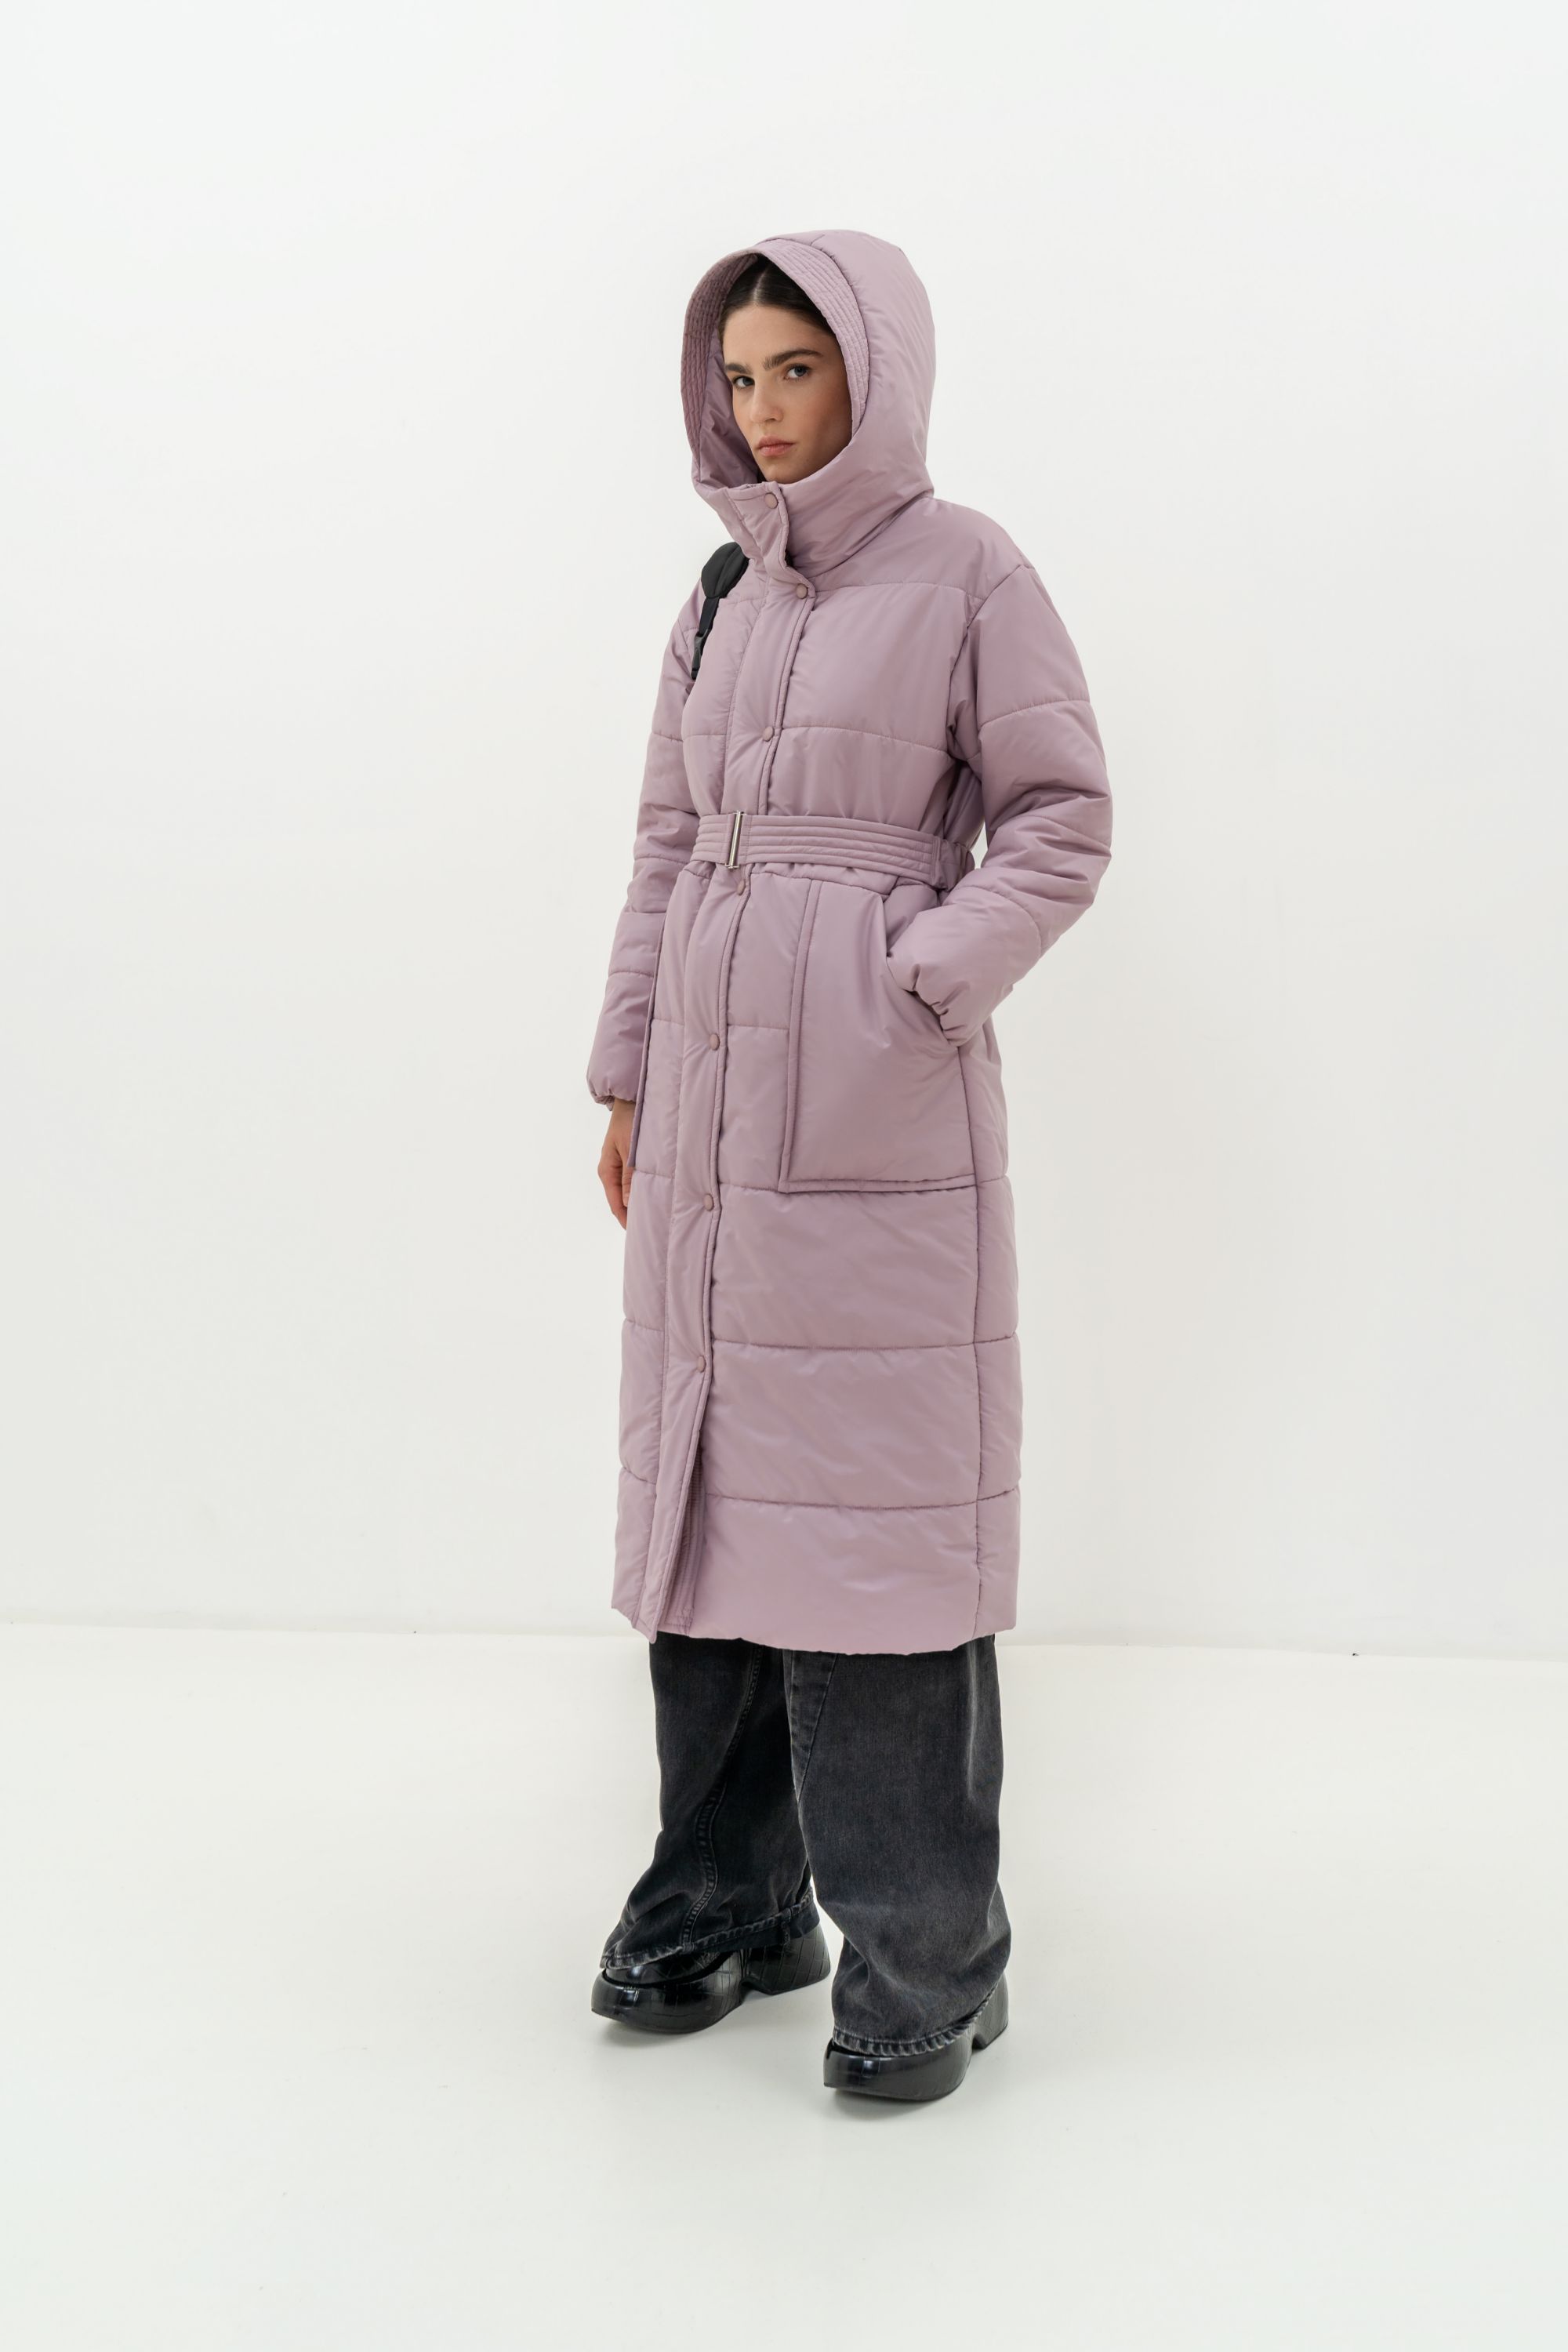 Пальто женское плащевое утепленное 5-12173-1. Фото 2.